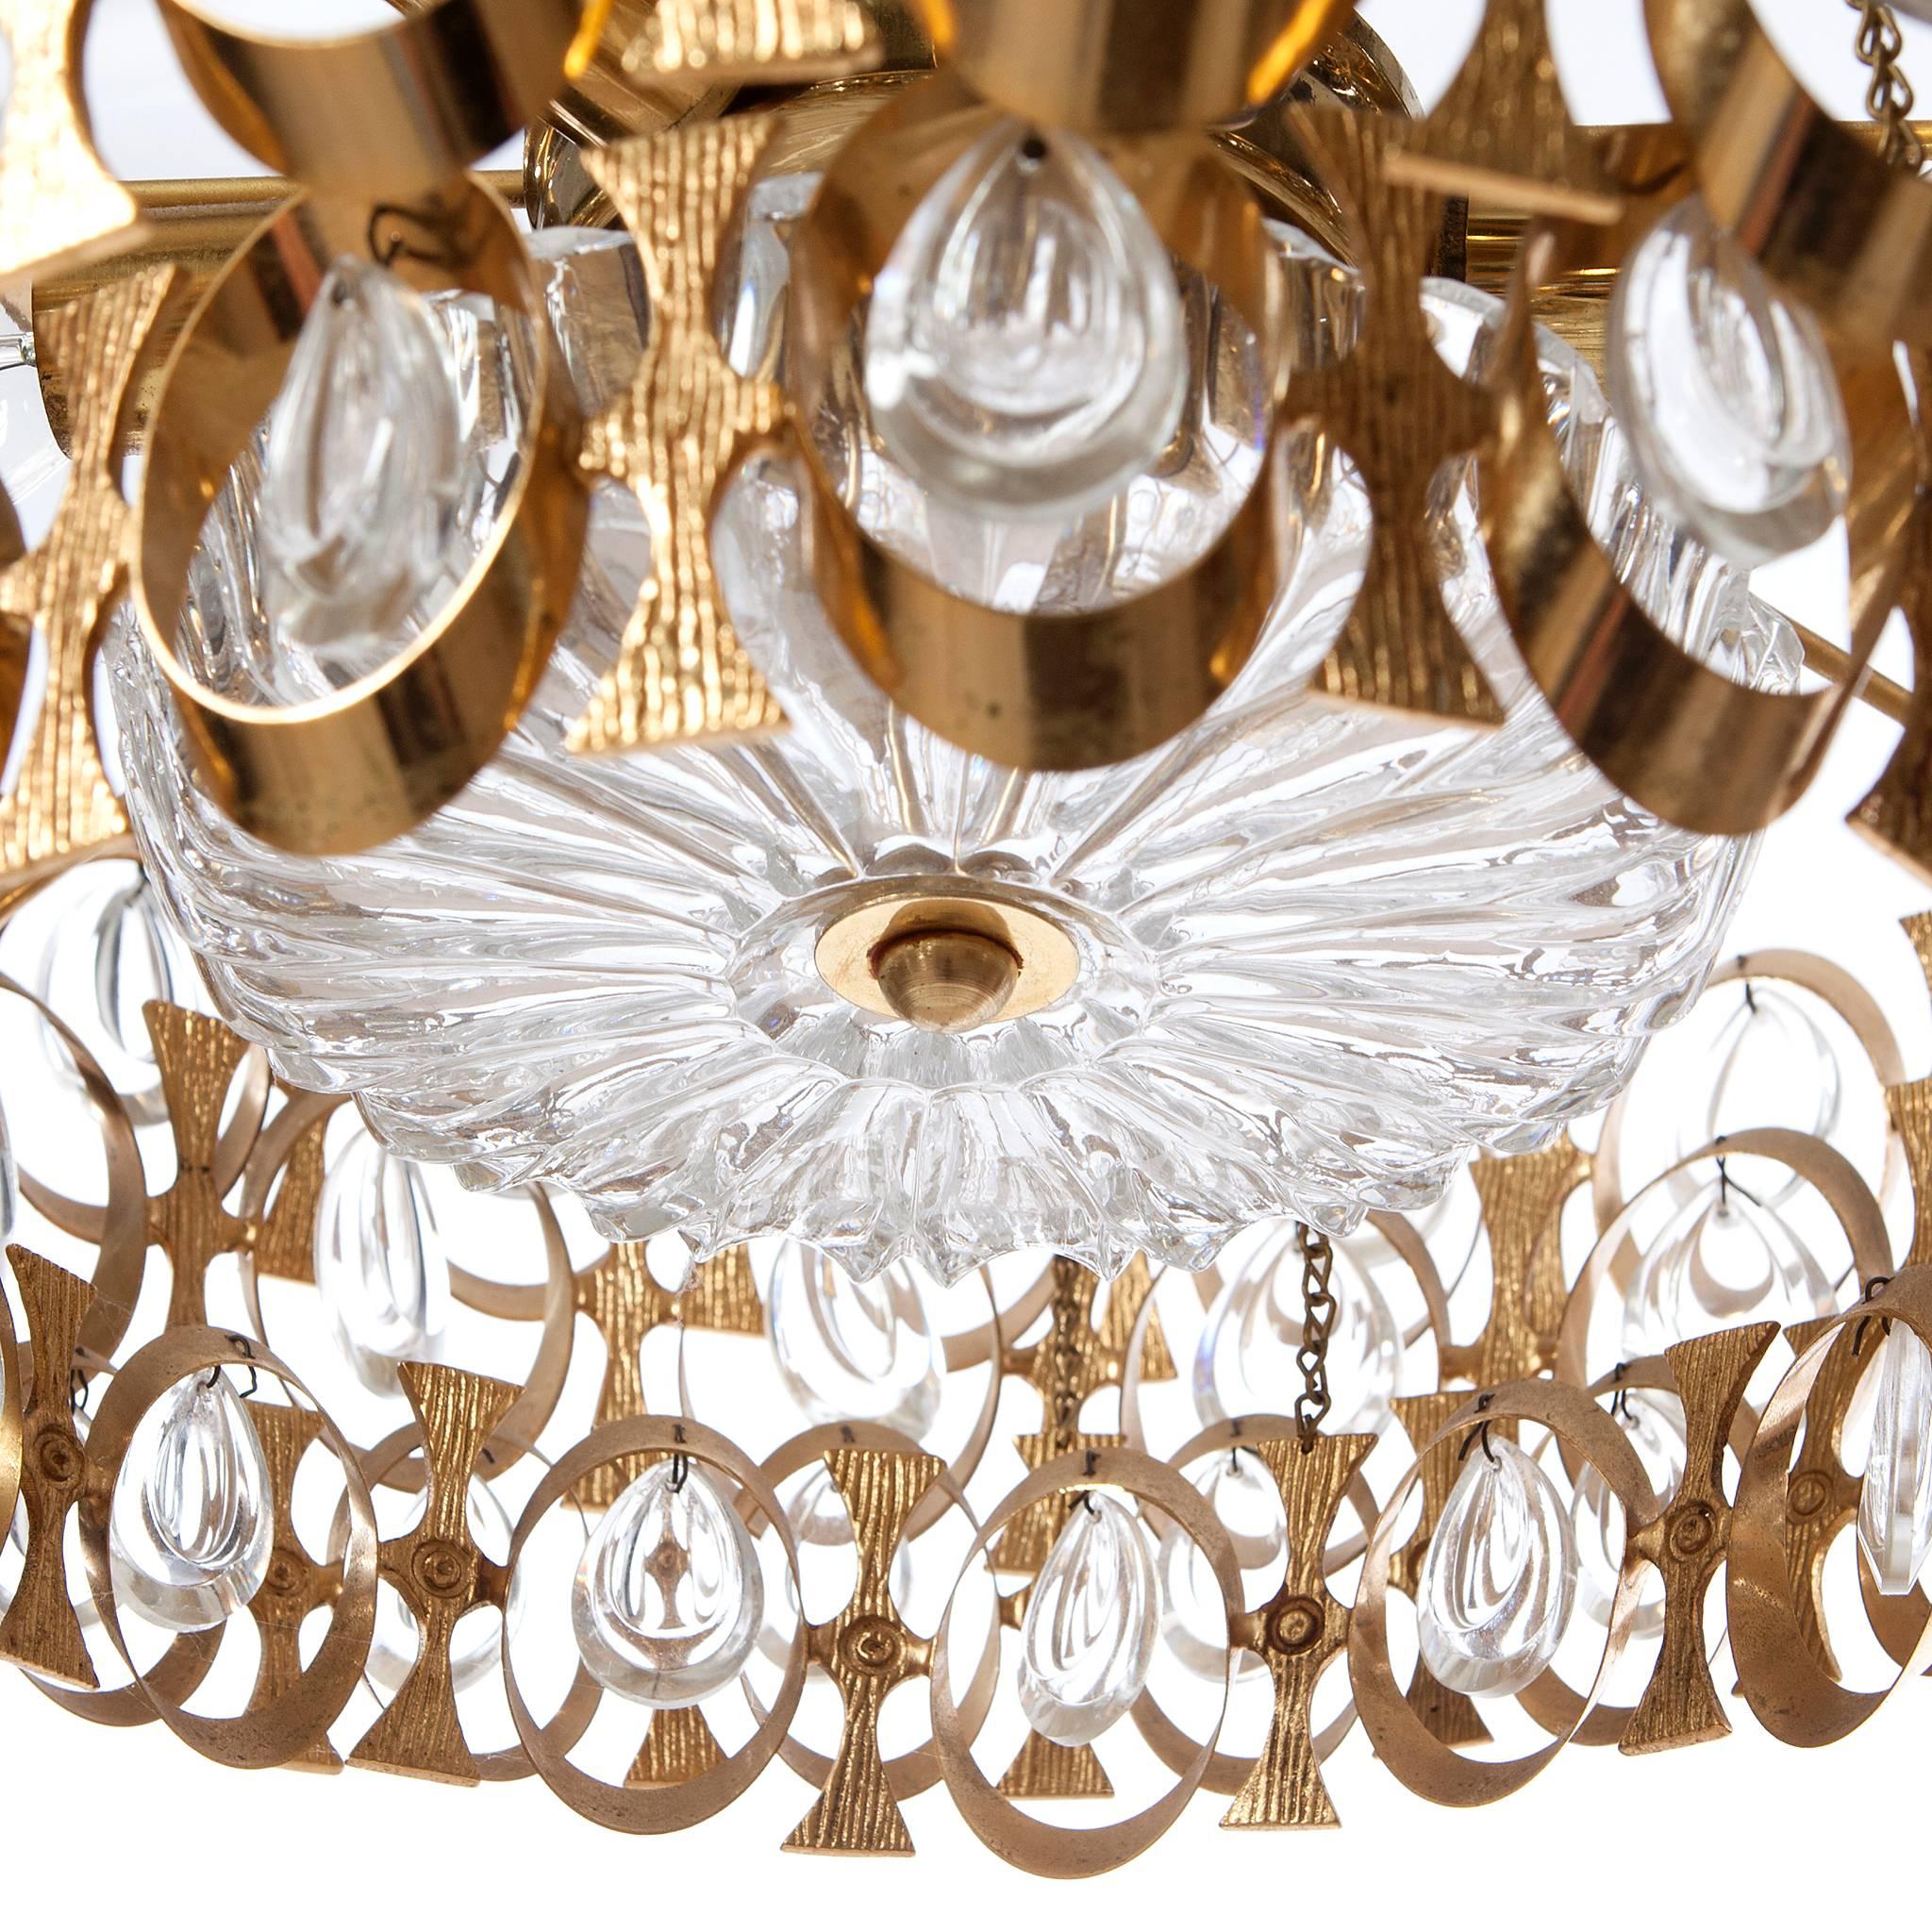 Lustre Palwa unique à huit lumières, datant des années 1960, avec anneaux et plaques en laiton doré de forme magnifique. Il est vraiment étonnant avec tous ses prismes de cristal en excellent état. Veuillez noter que nous avons plusieurs lustres de